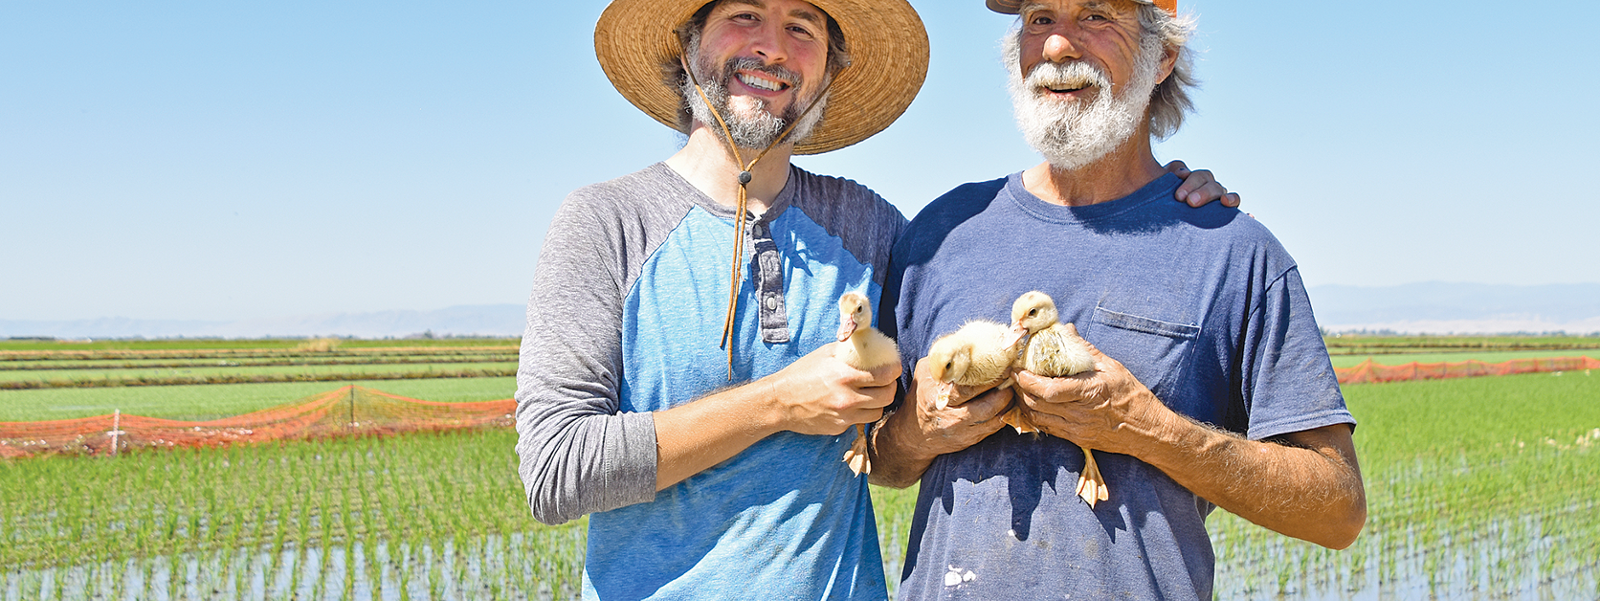 'Duck Revolution' combines rice growing, raising ducks